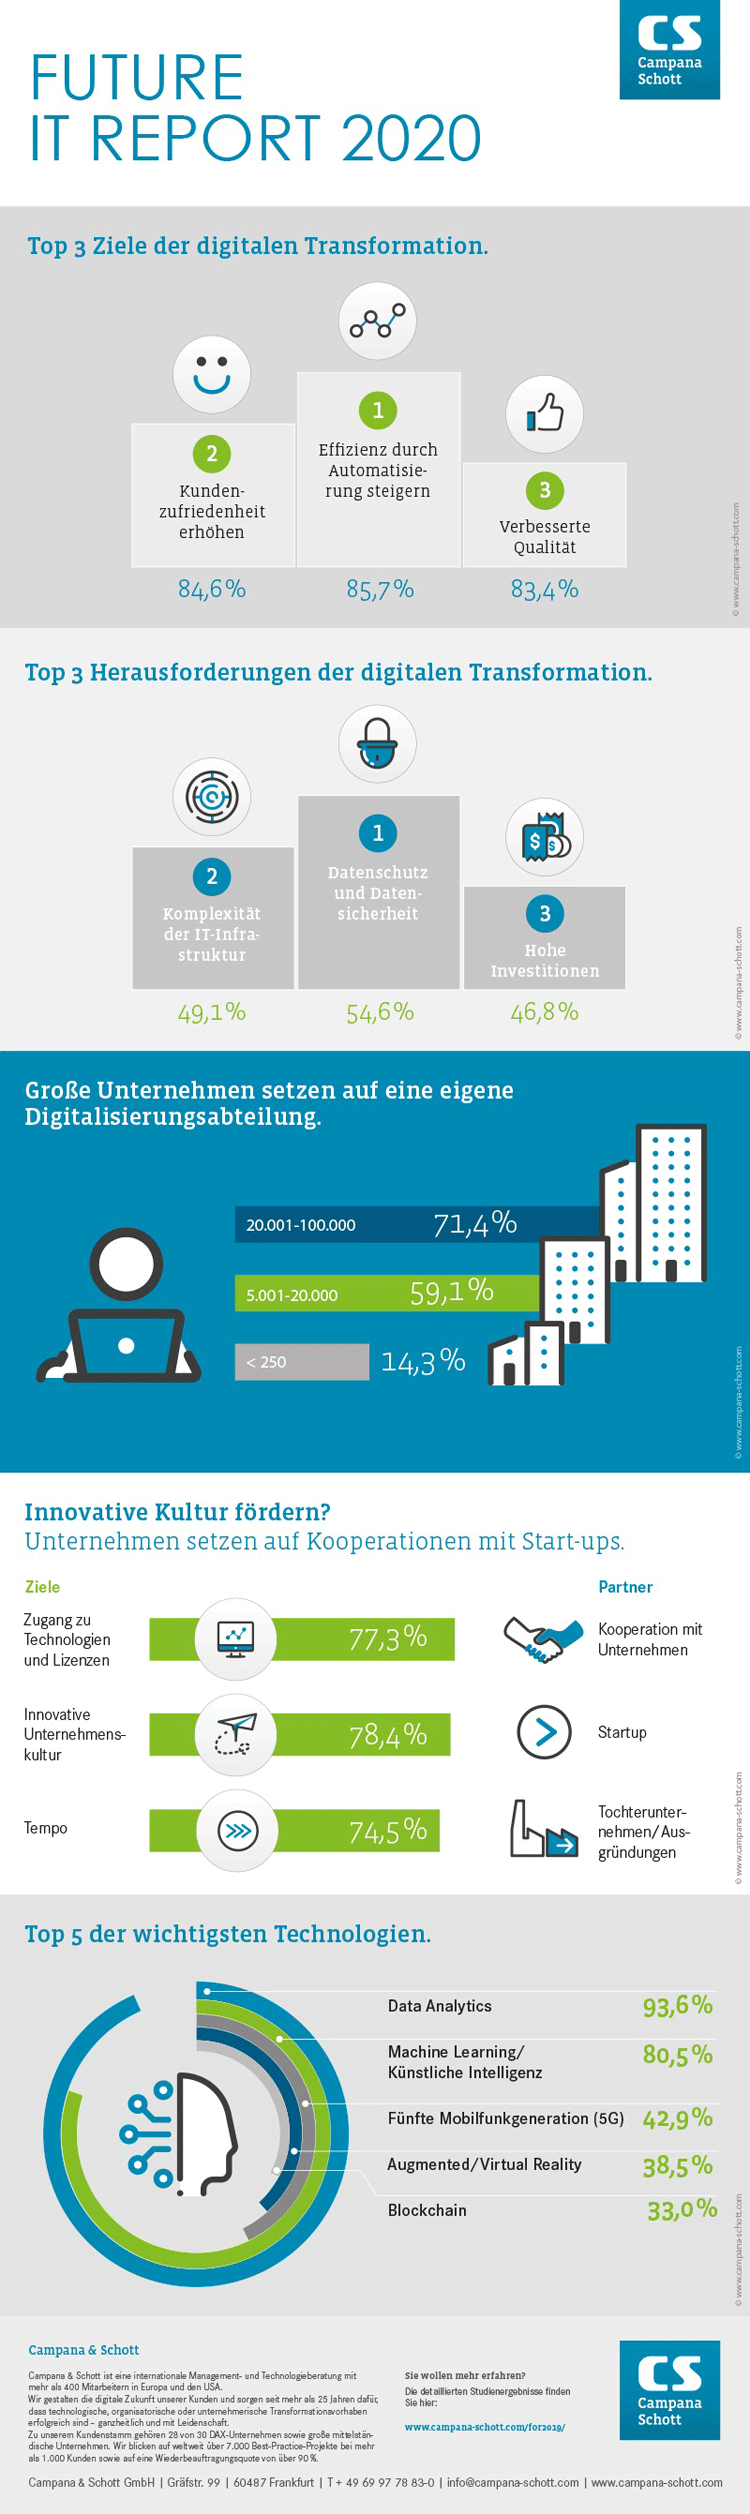 Infografik: Ziele und Herausforderungen der Digitalisierung